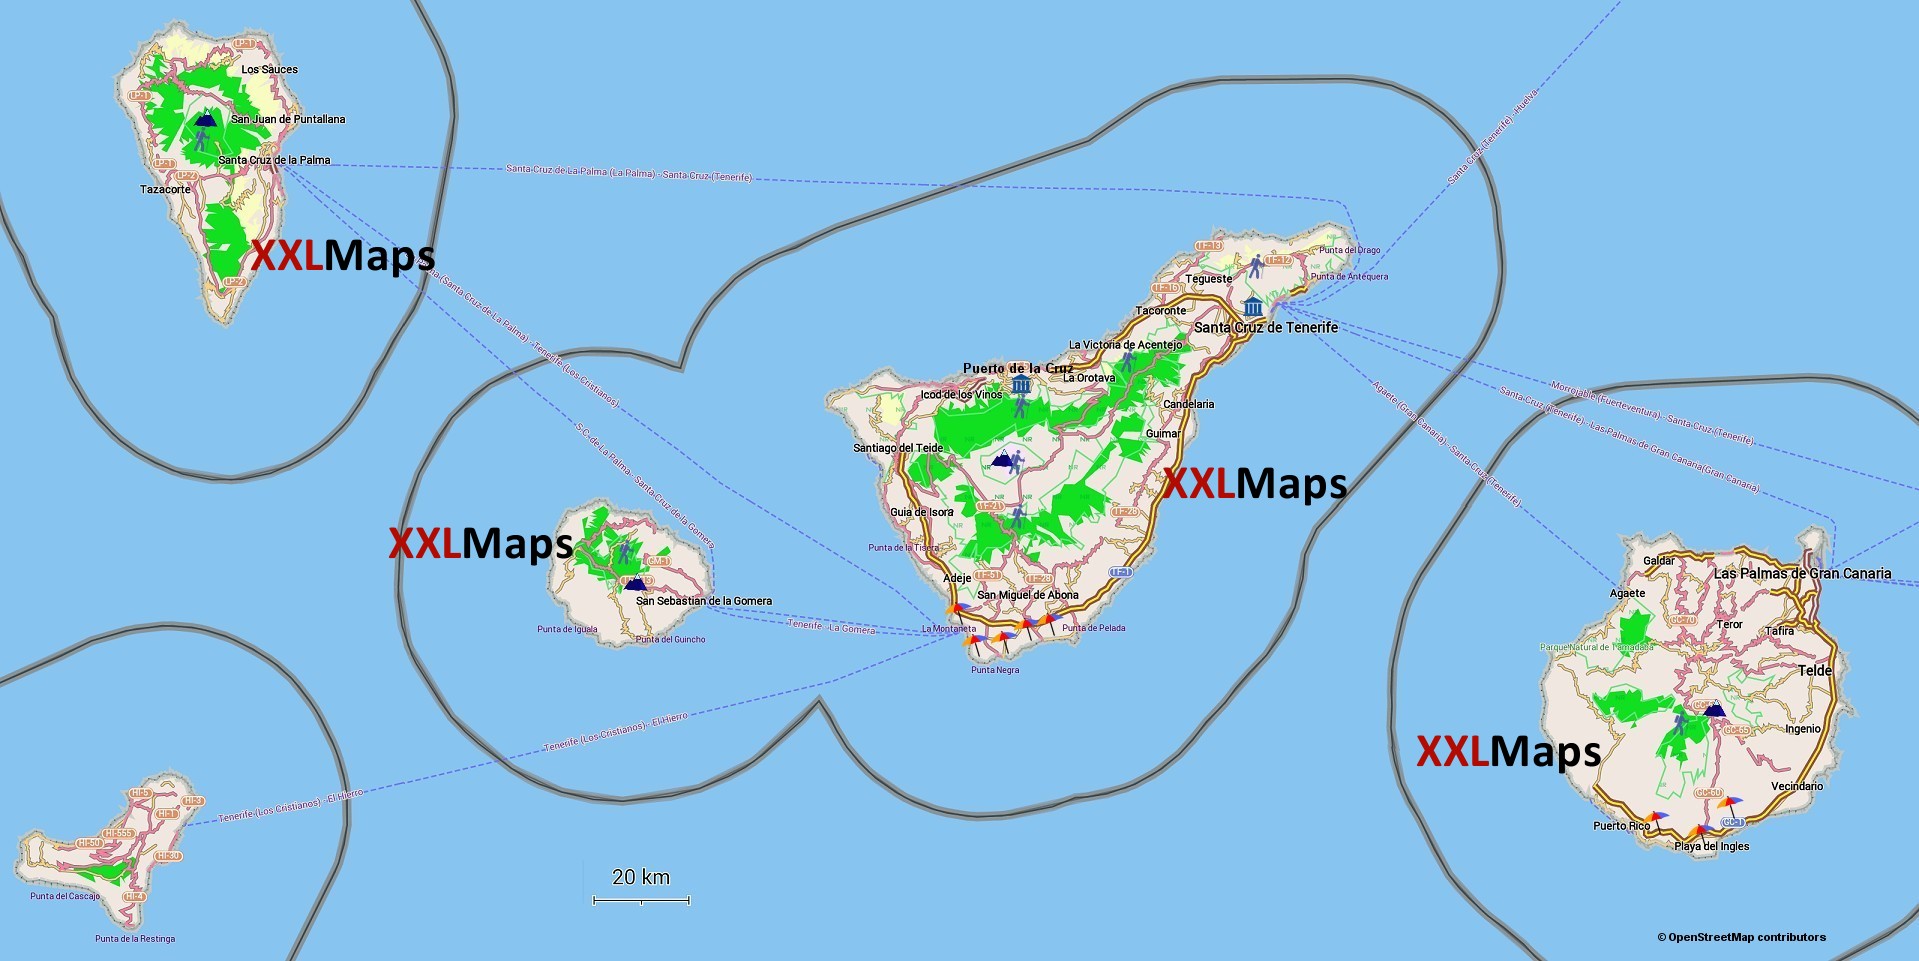 Mappa fisica di Isole Canarie